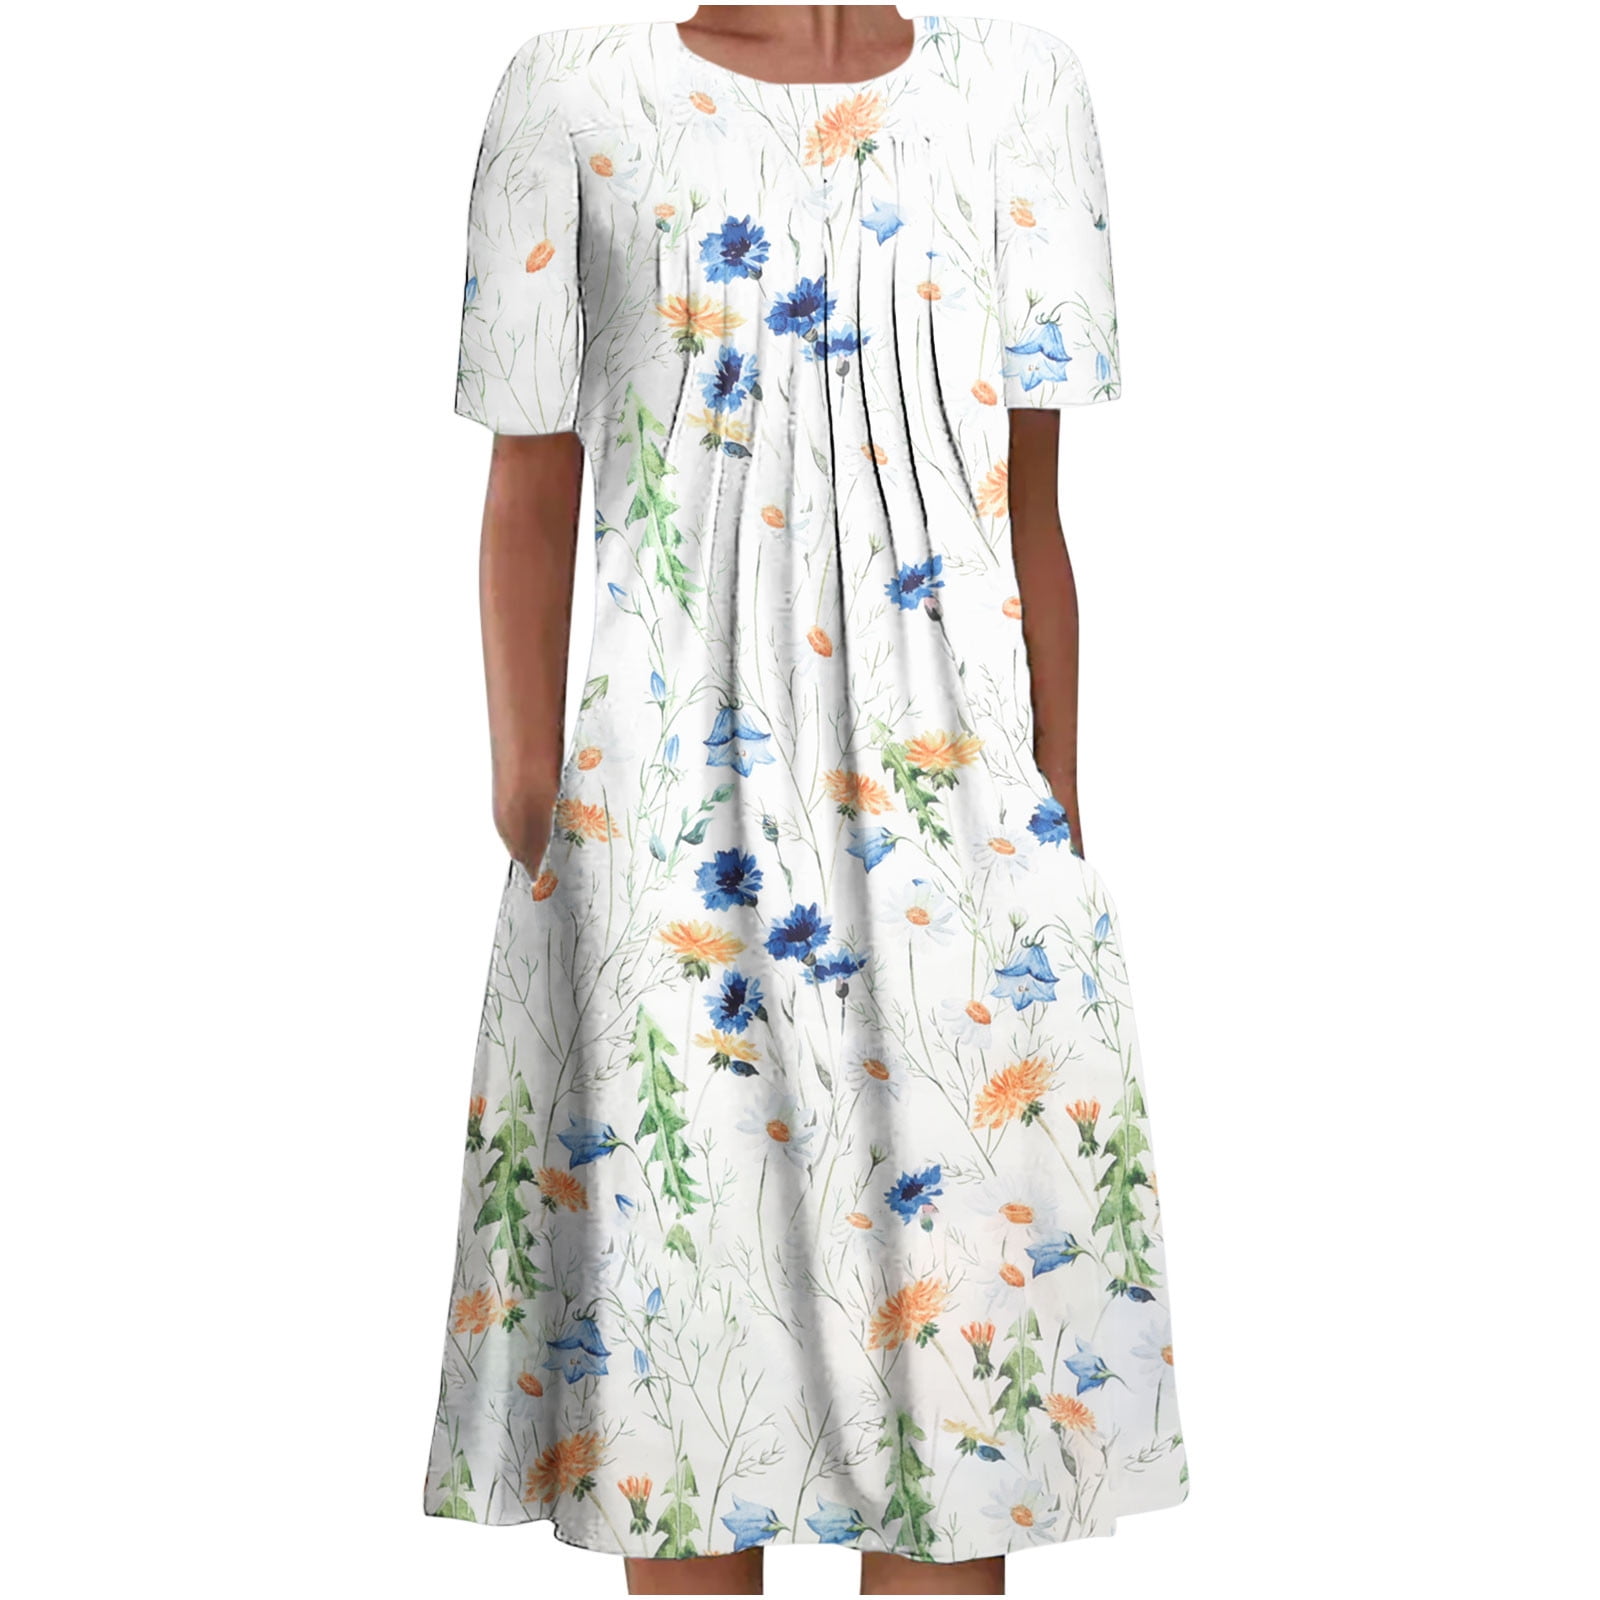 Ganfancp Midi Summer Dress Knee Length Dress for Women formal Boho ...